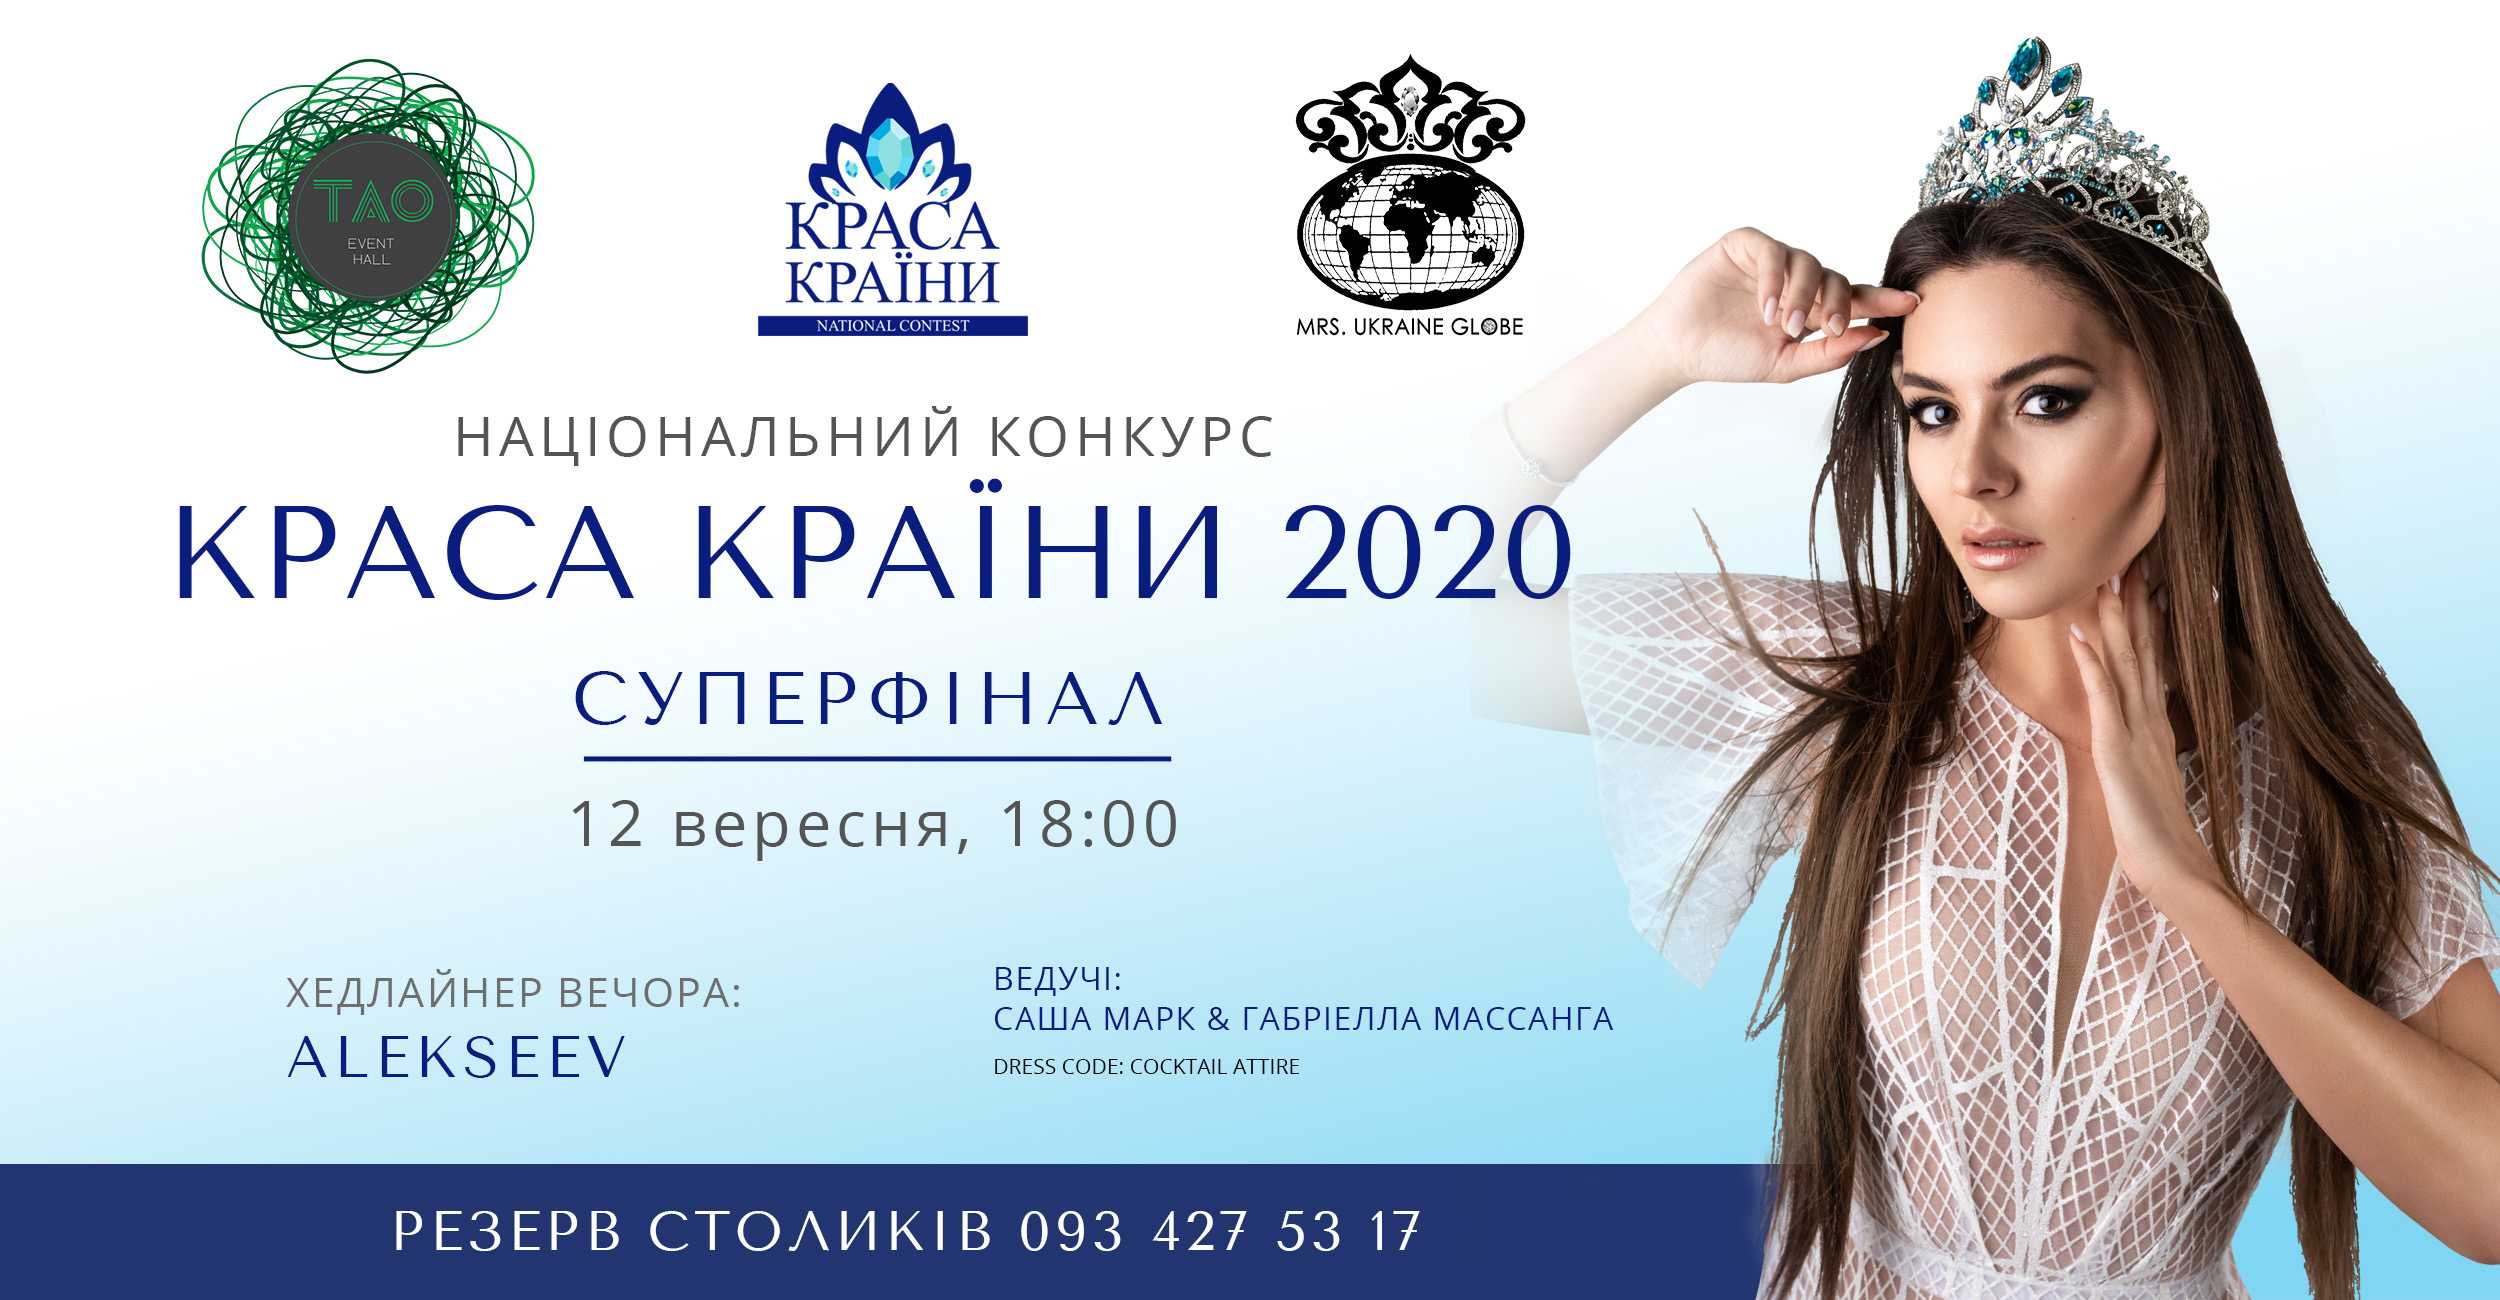 Краса країни 2020 — образ современной украинской женщины